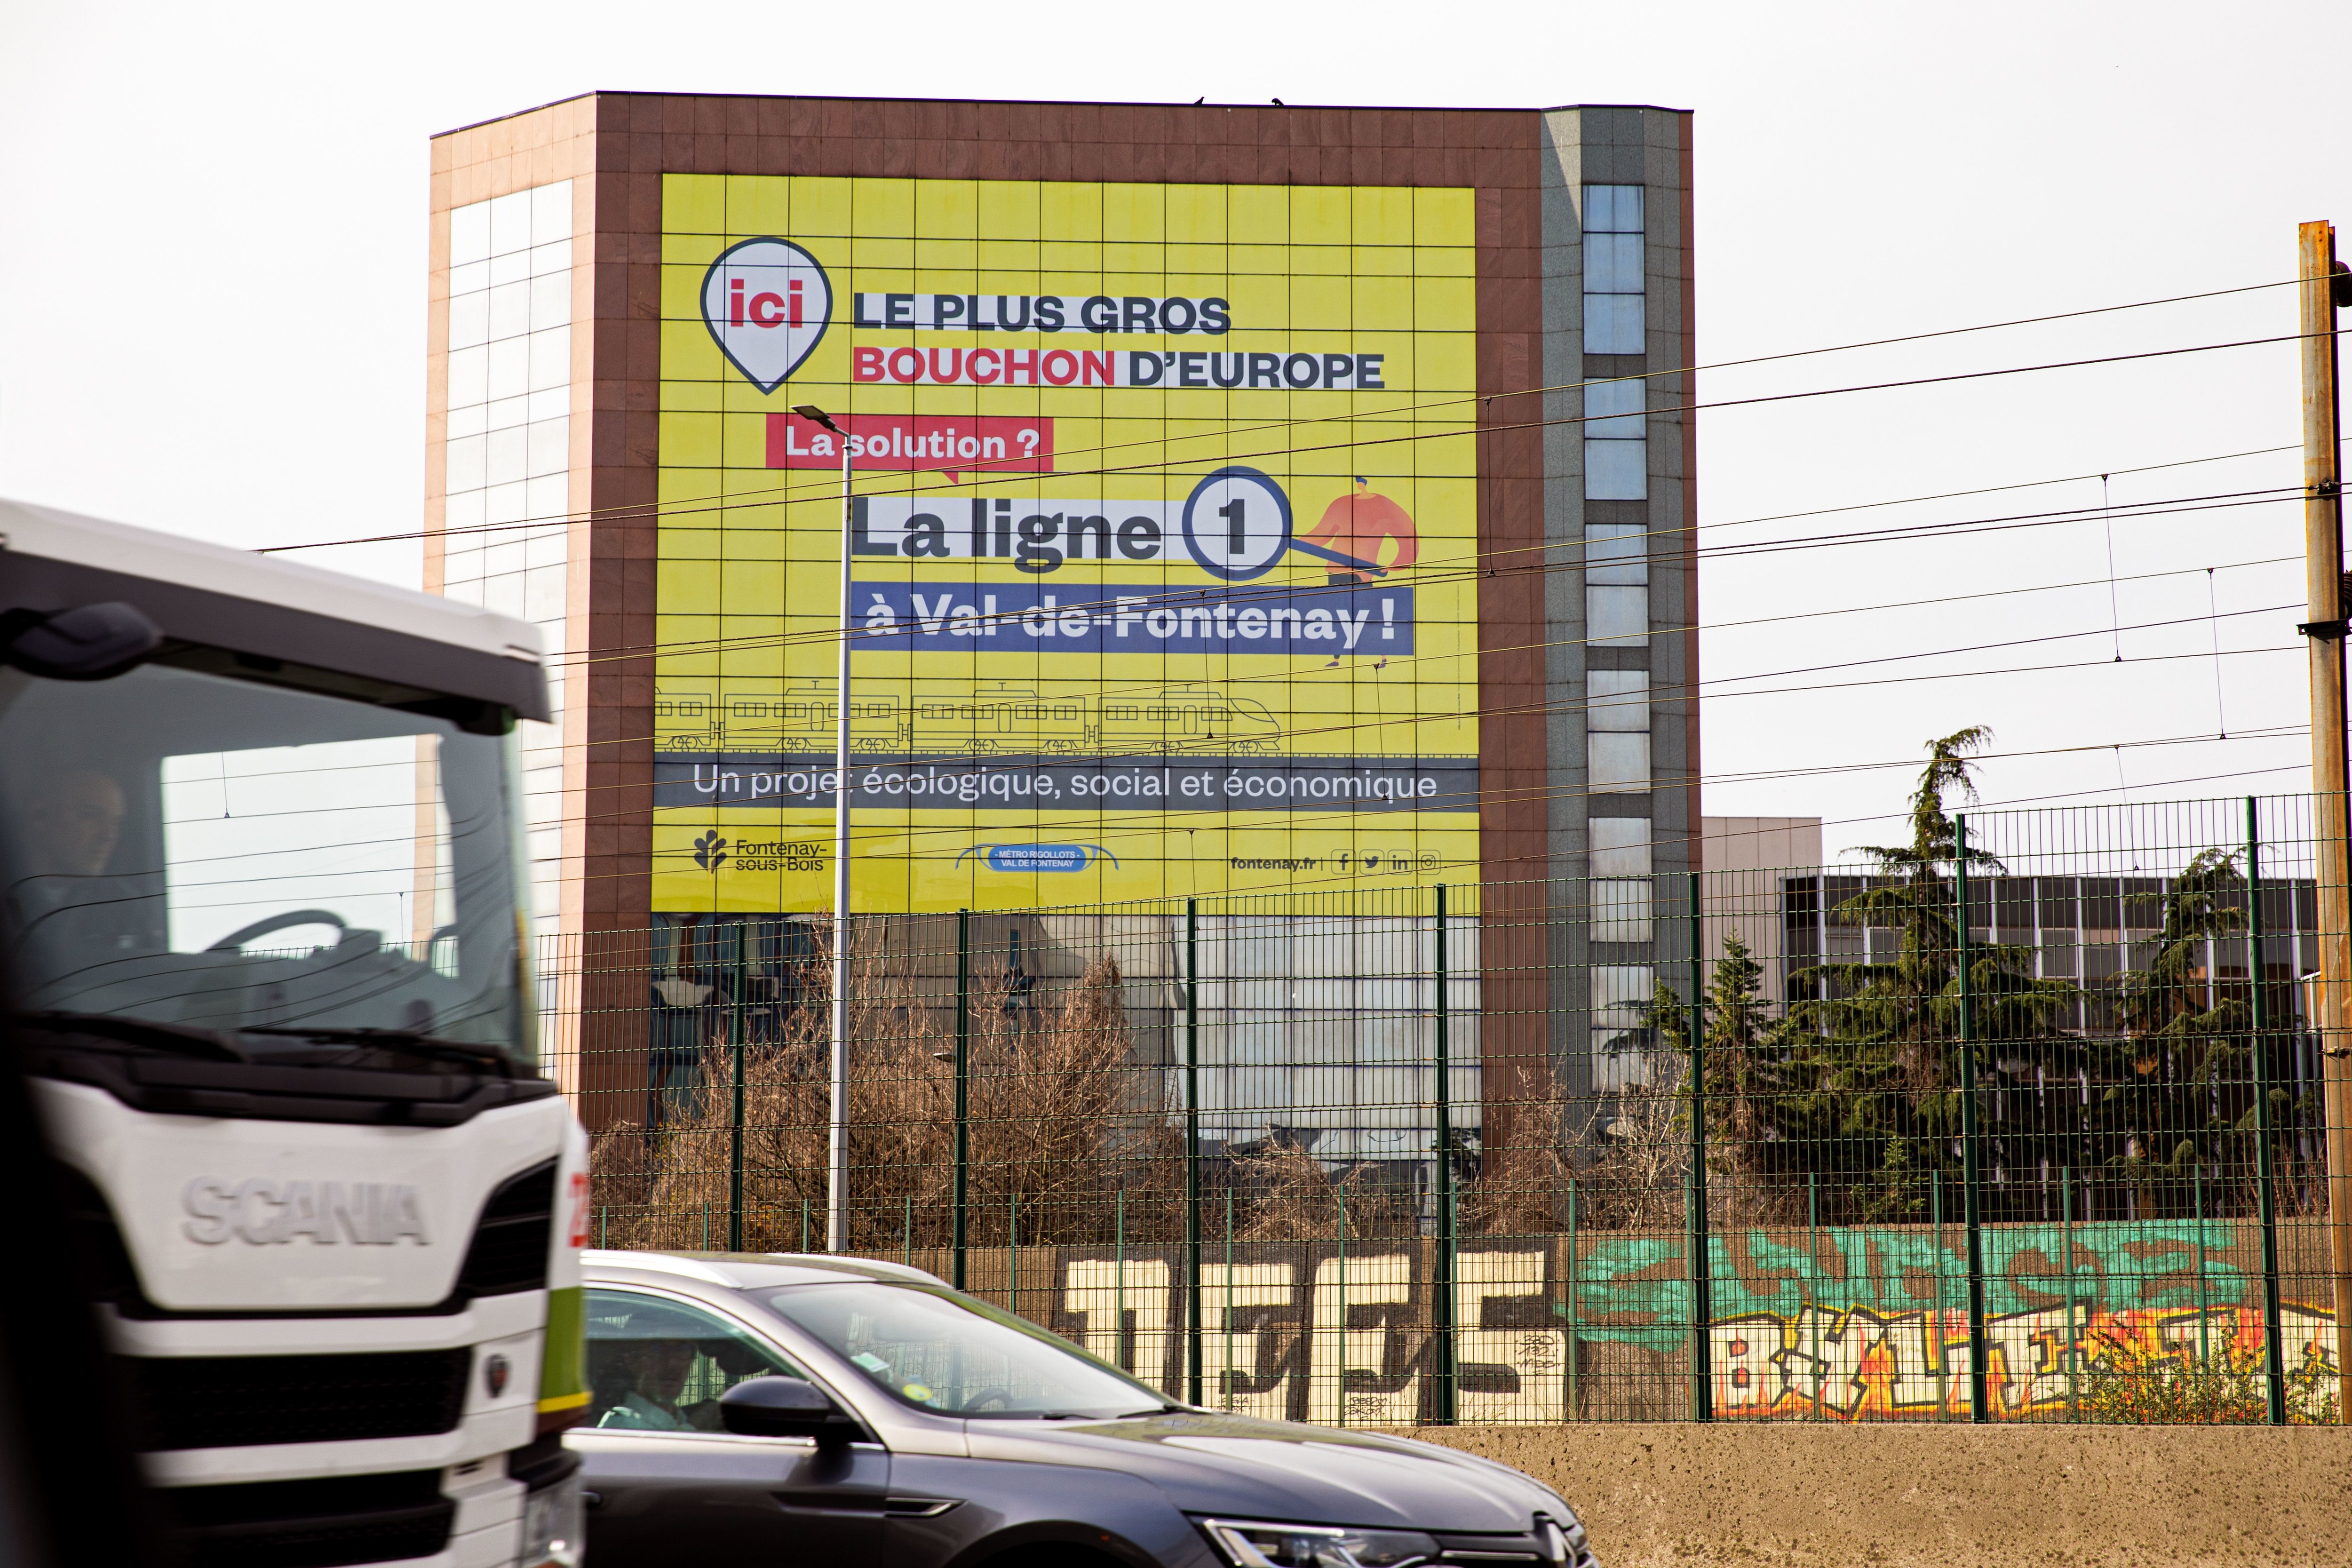 Fontenay-sous-Bois (Val-de-Marne), vendredi 17 mars. L'immense message de soutien au prolongement de la ligne 1 s'étale en toutes lettres sur un immeuble visible depuis l'A86. /Ville de Fontenay